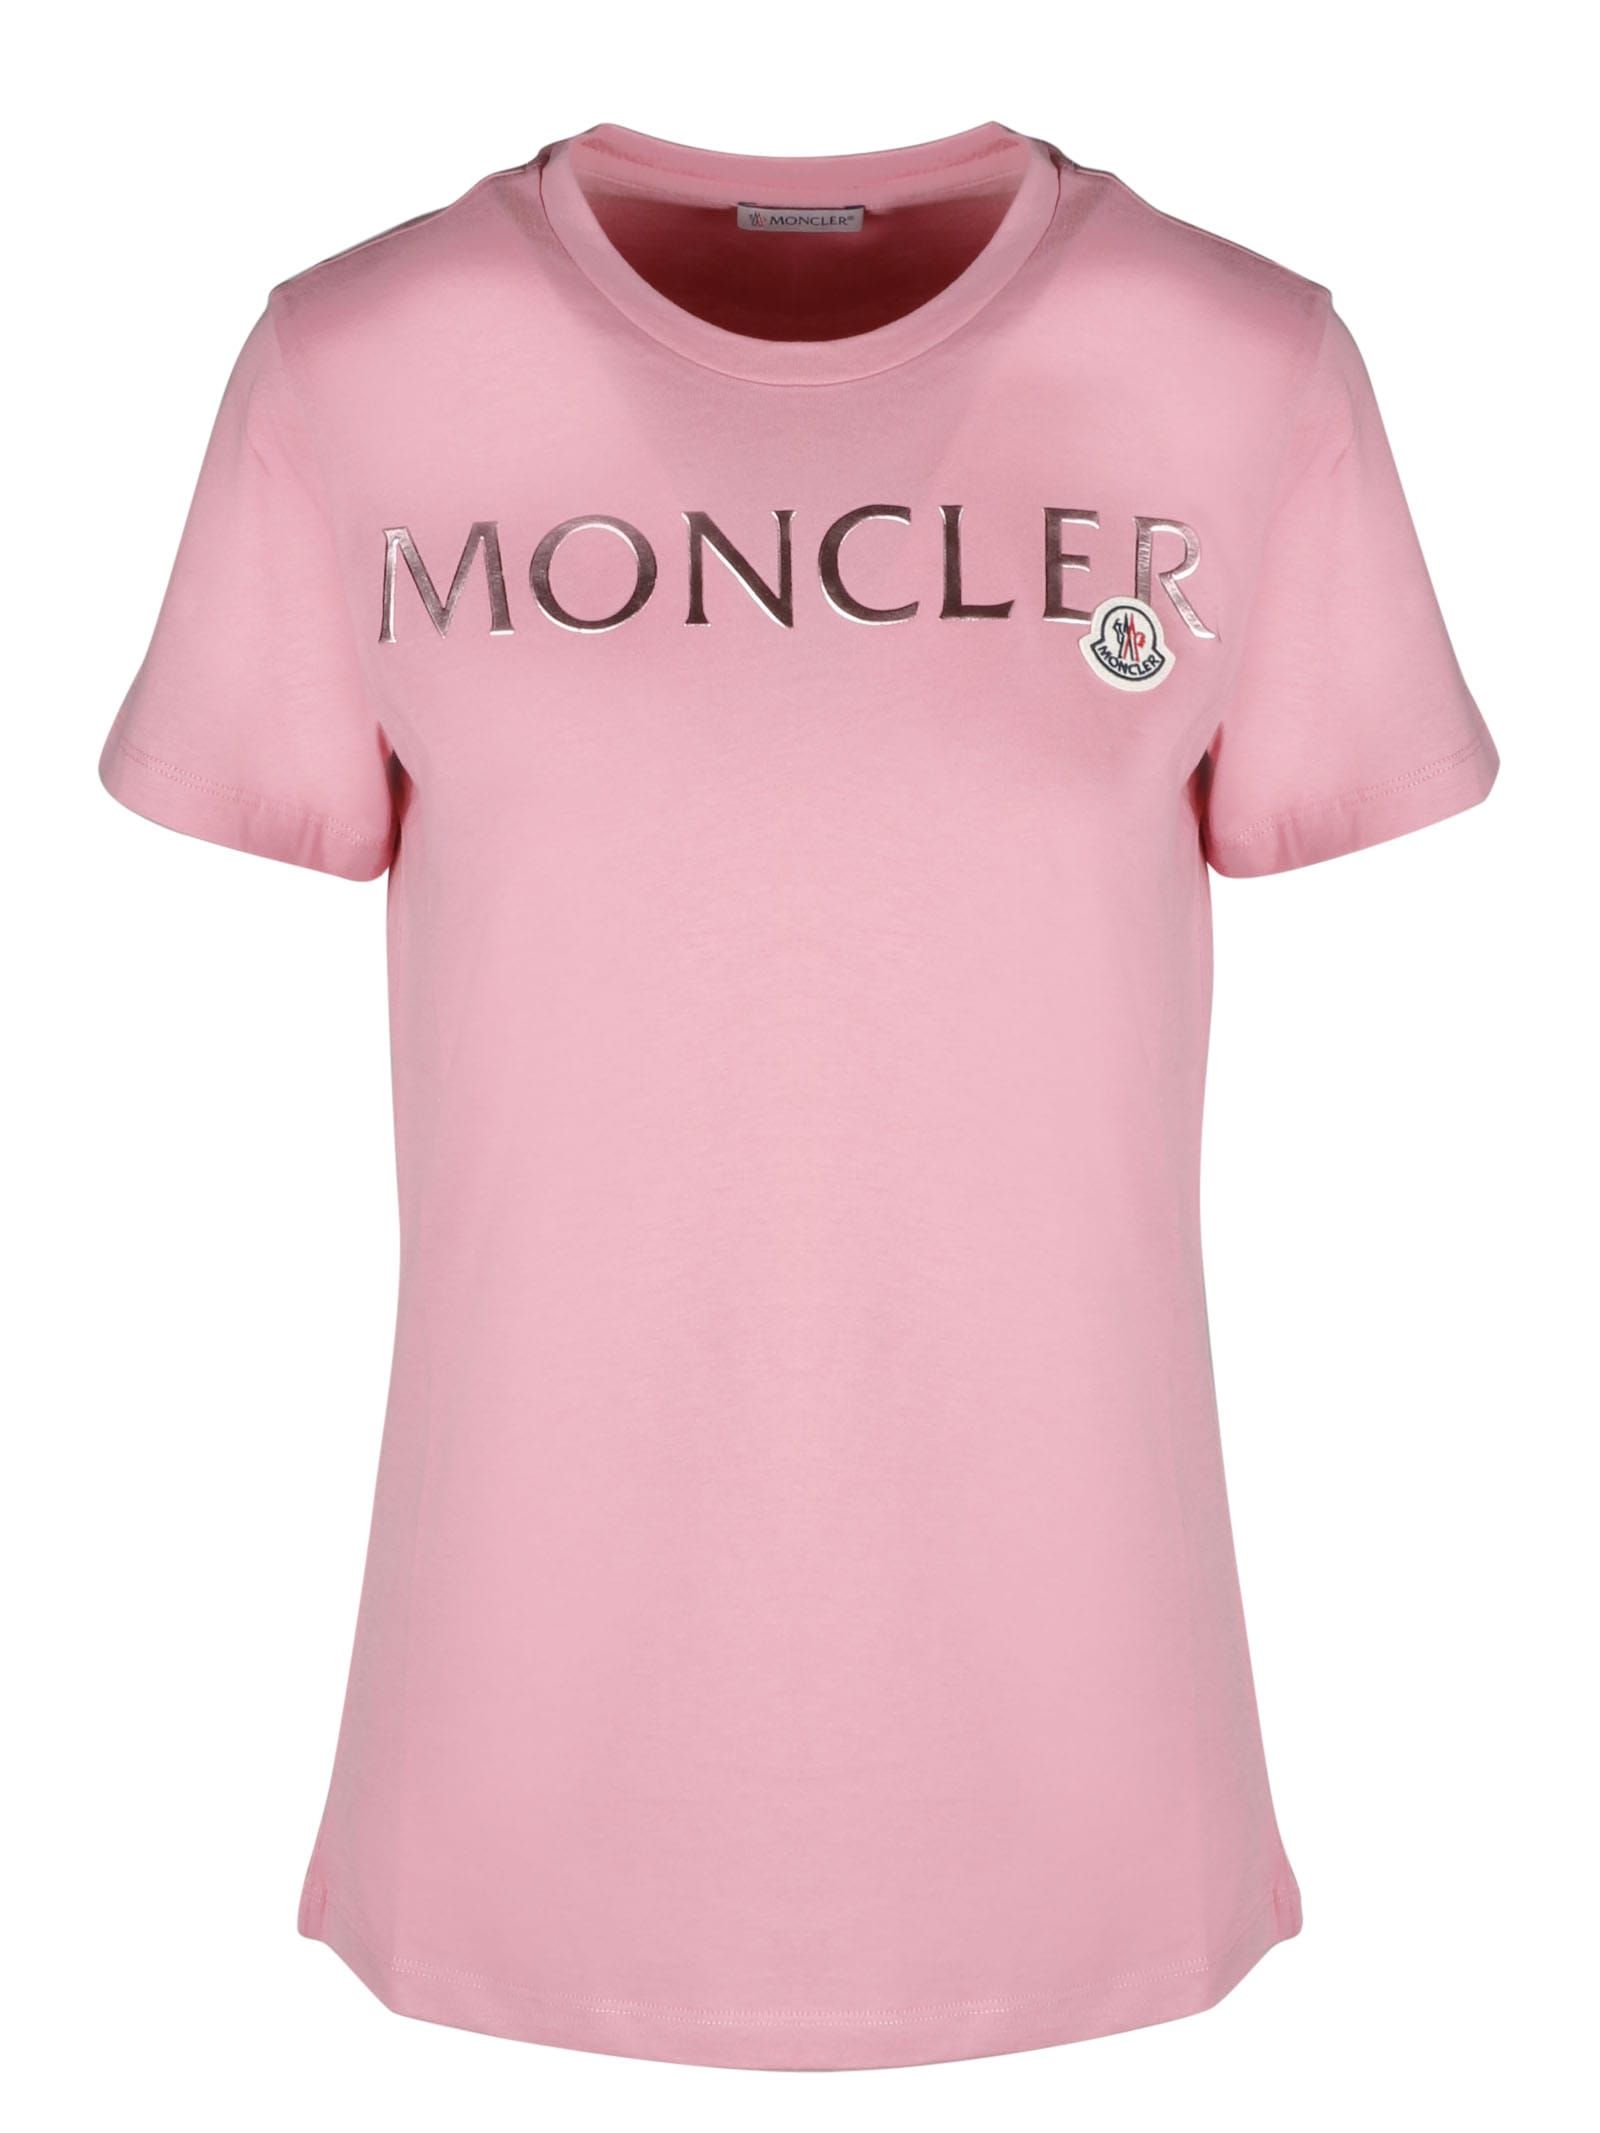 moncler sale t shirt